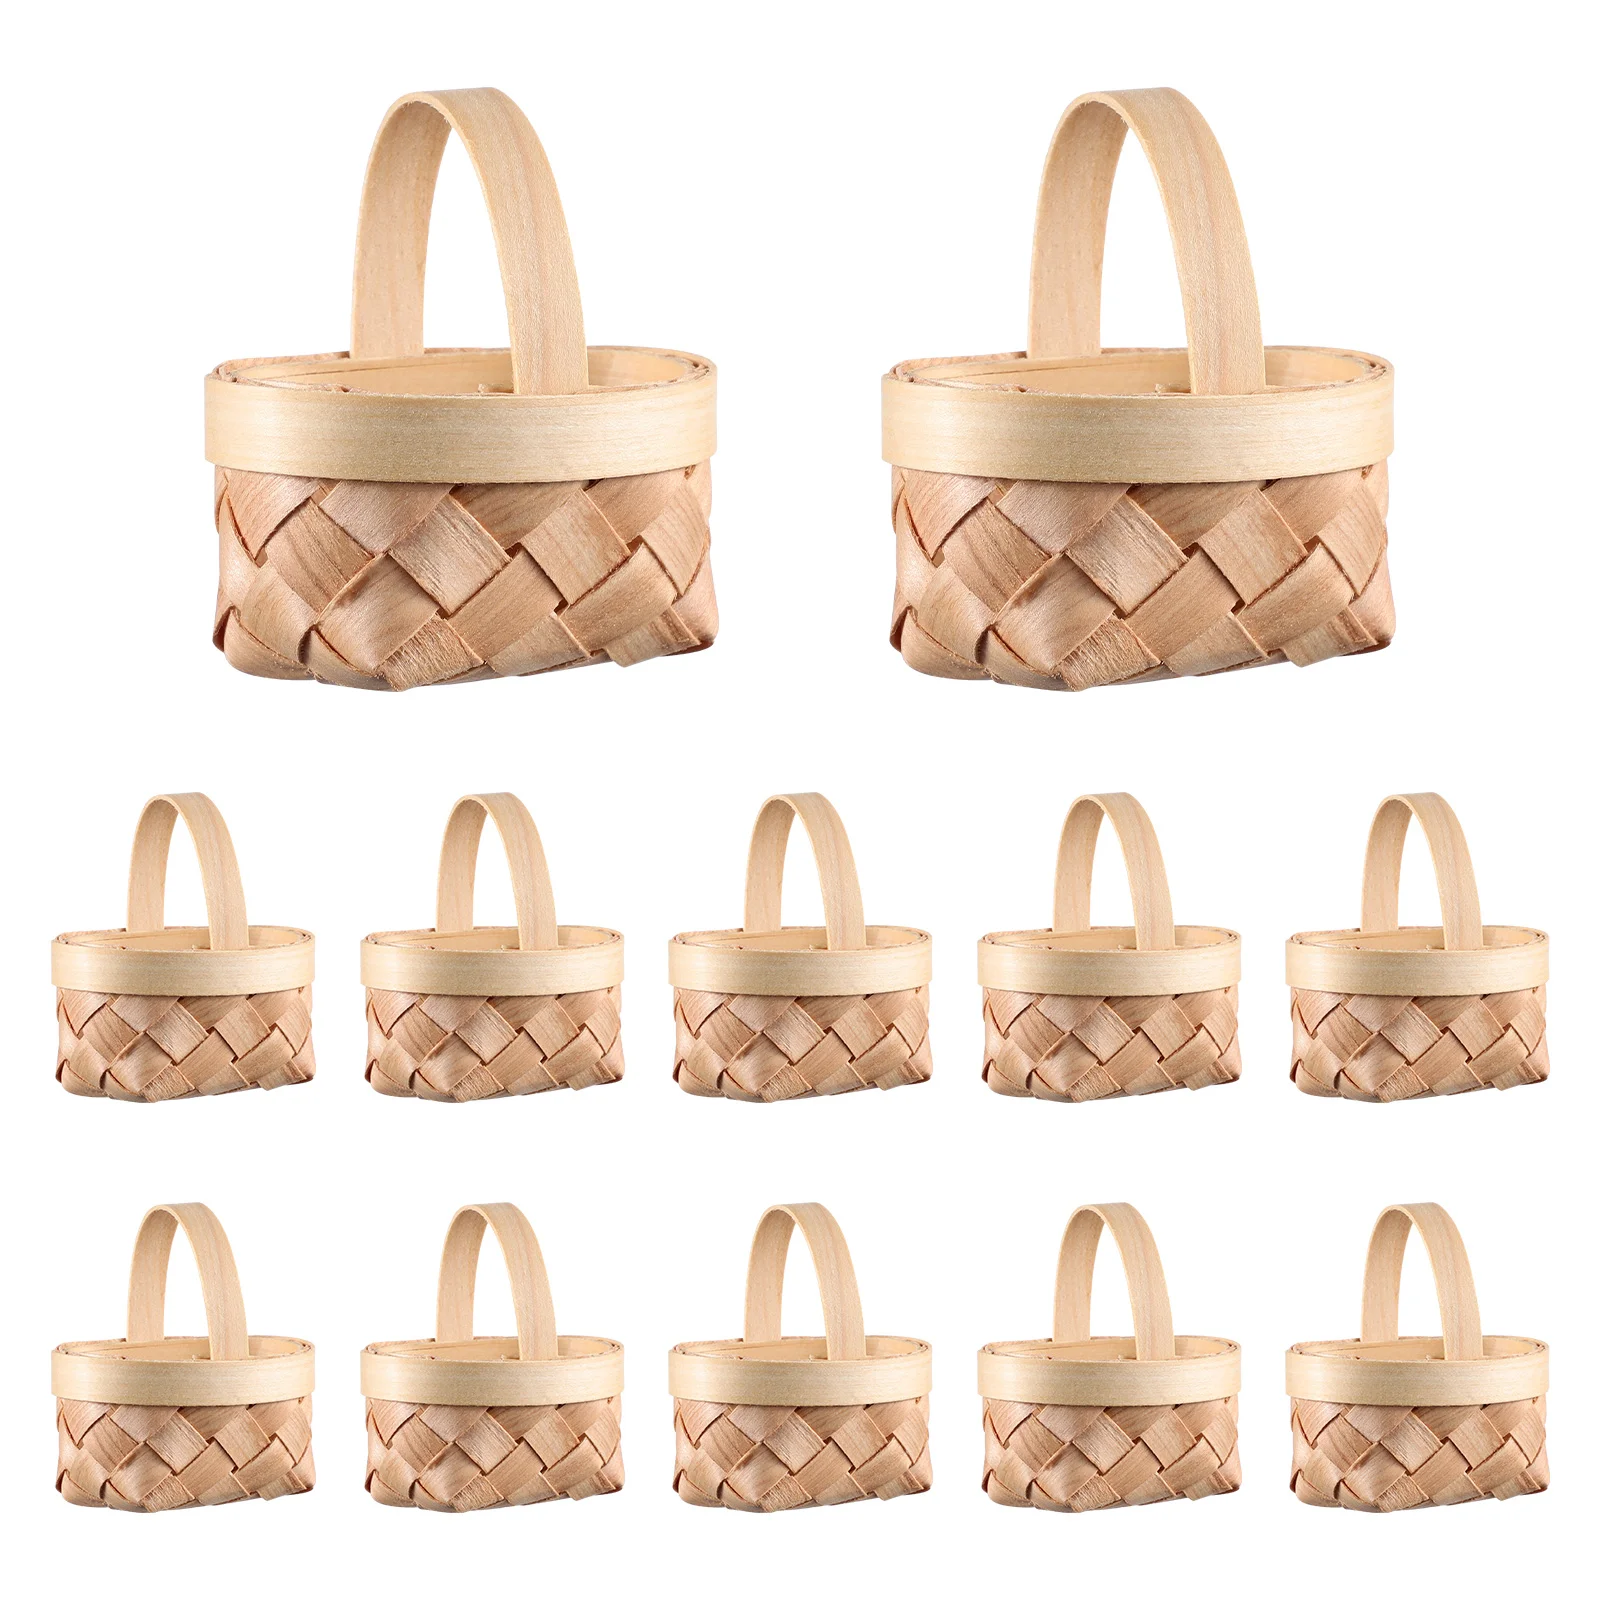 Плетеная корзина Мини-Деревянные корзины для хранения конфет, плетение миниатюрных портативных декоративных игрушек для детей